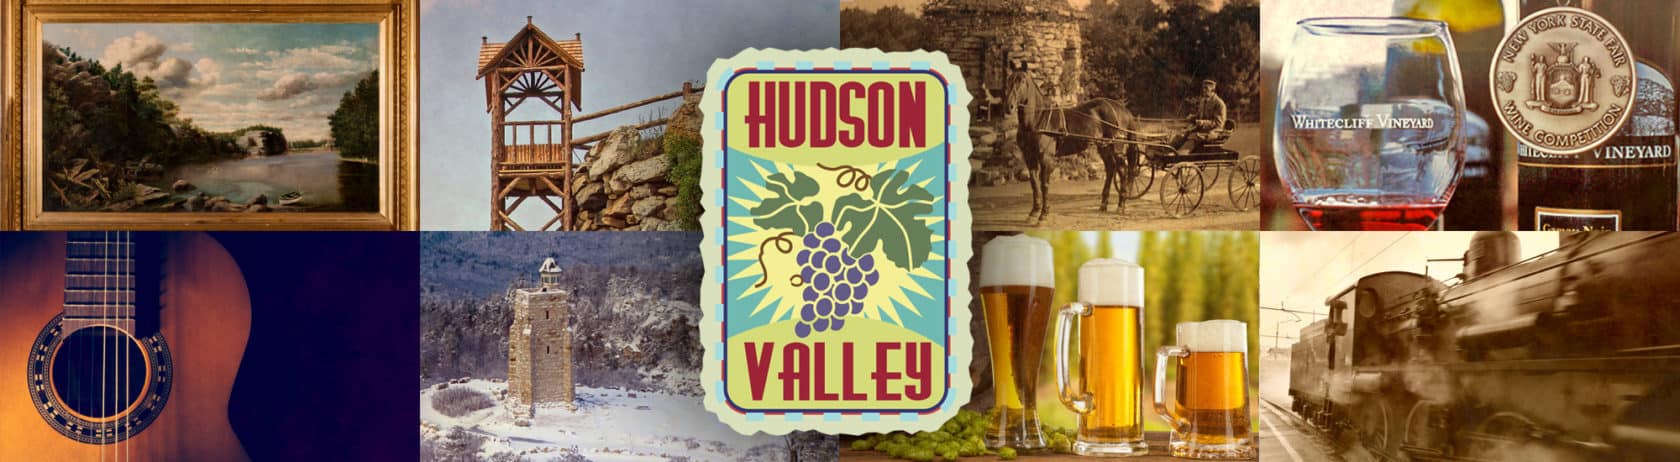 Hudson Valley Highlights